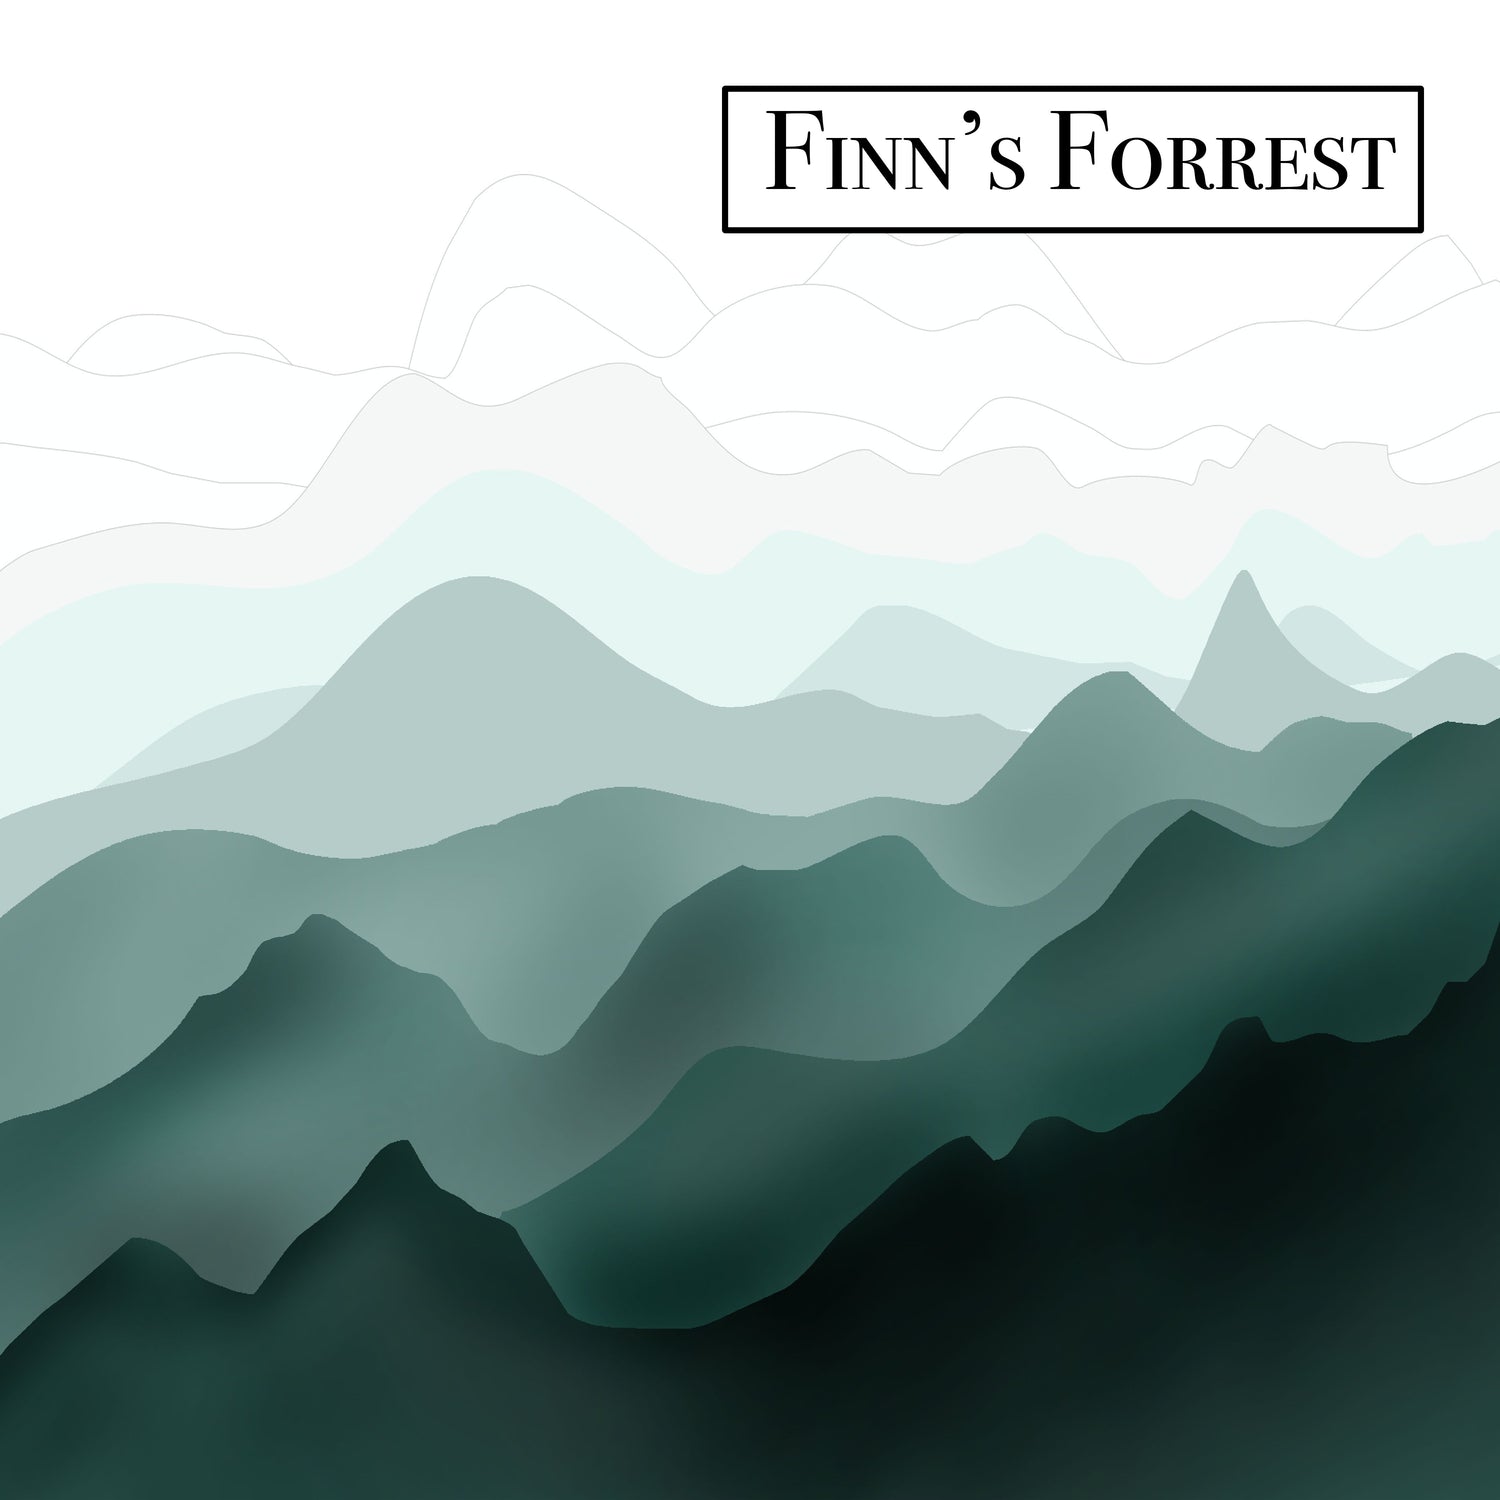 Finns Forest